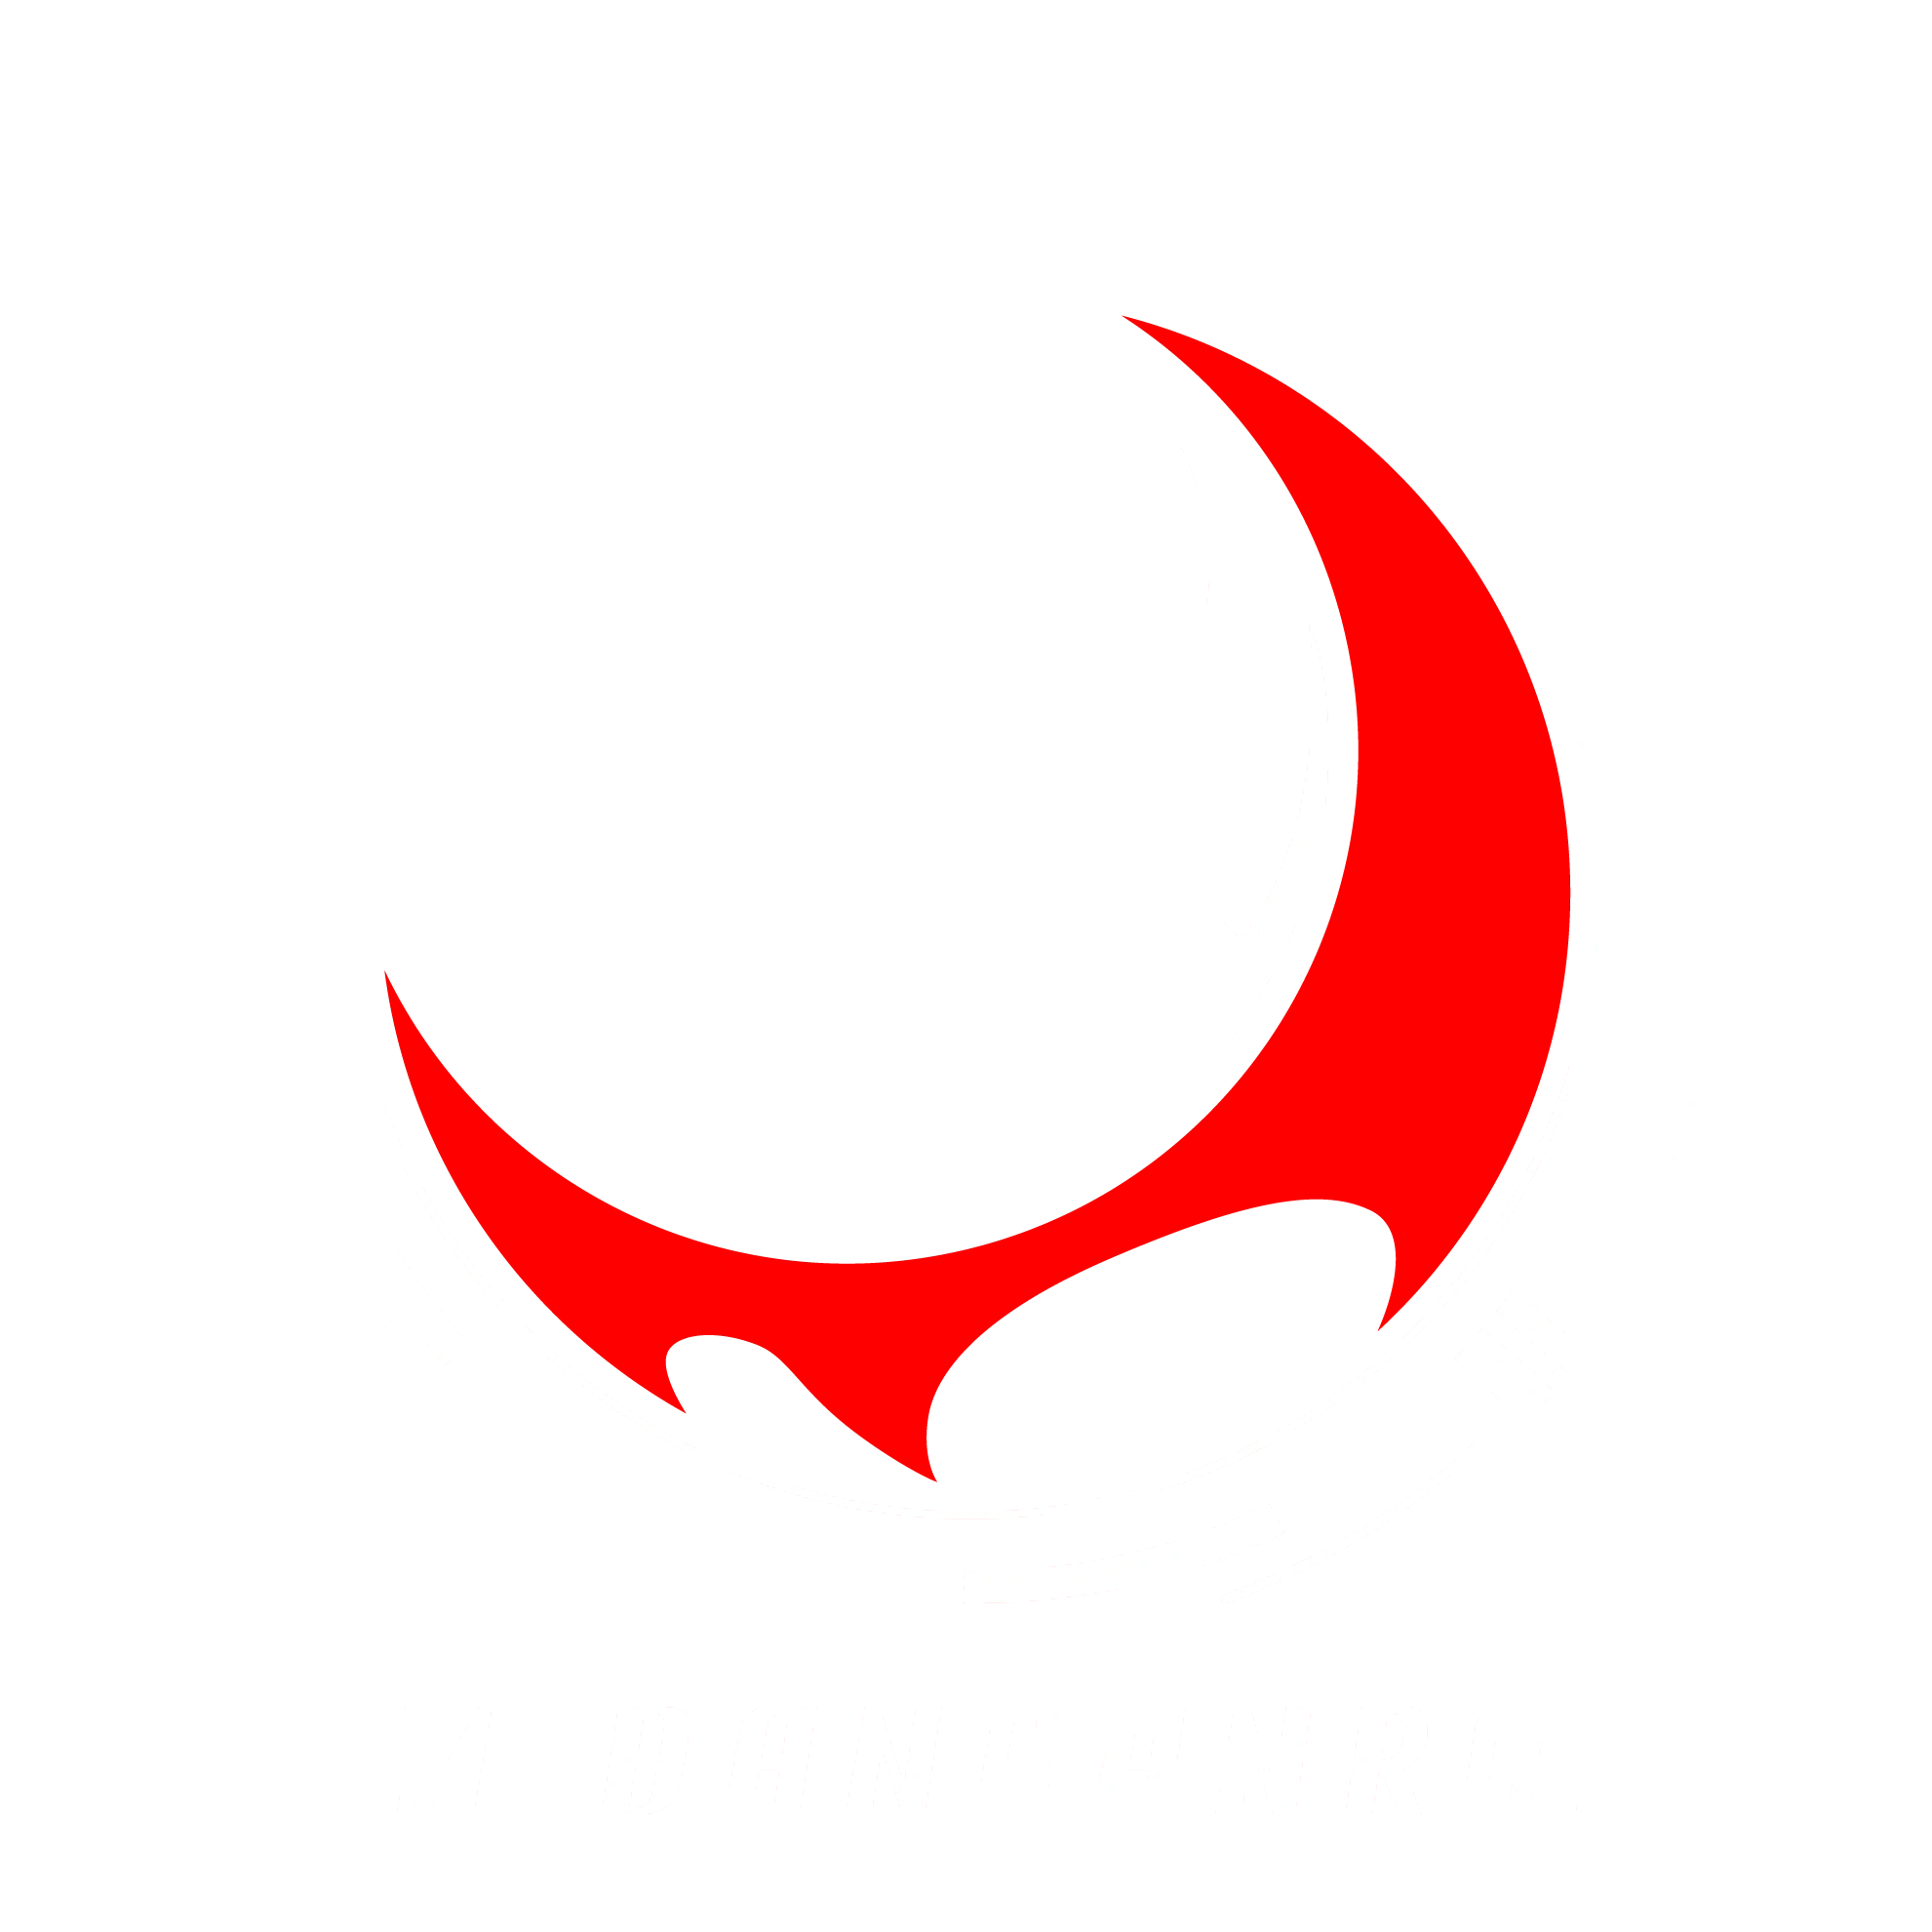 Danganronpa